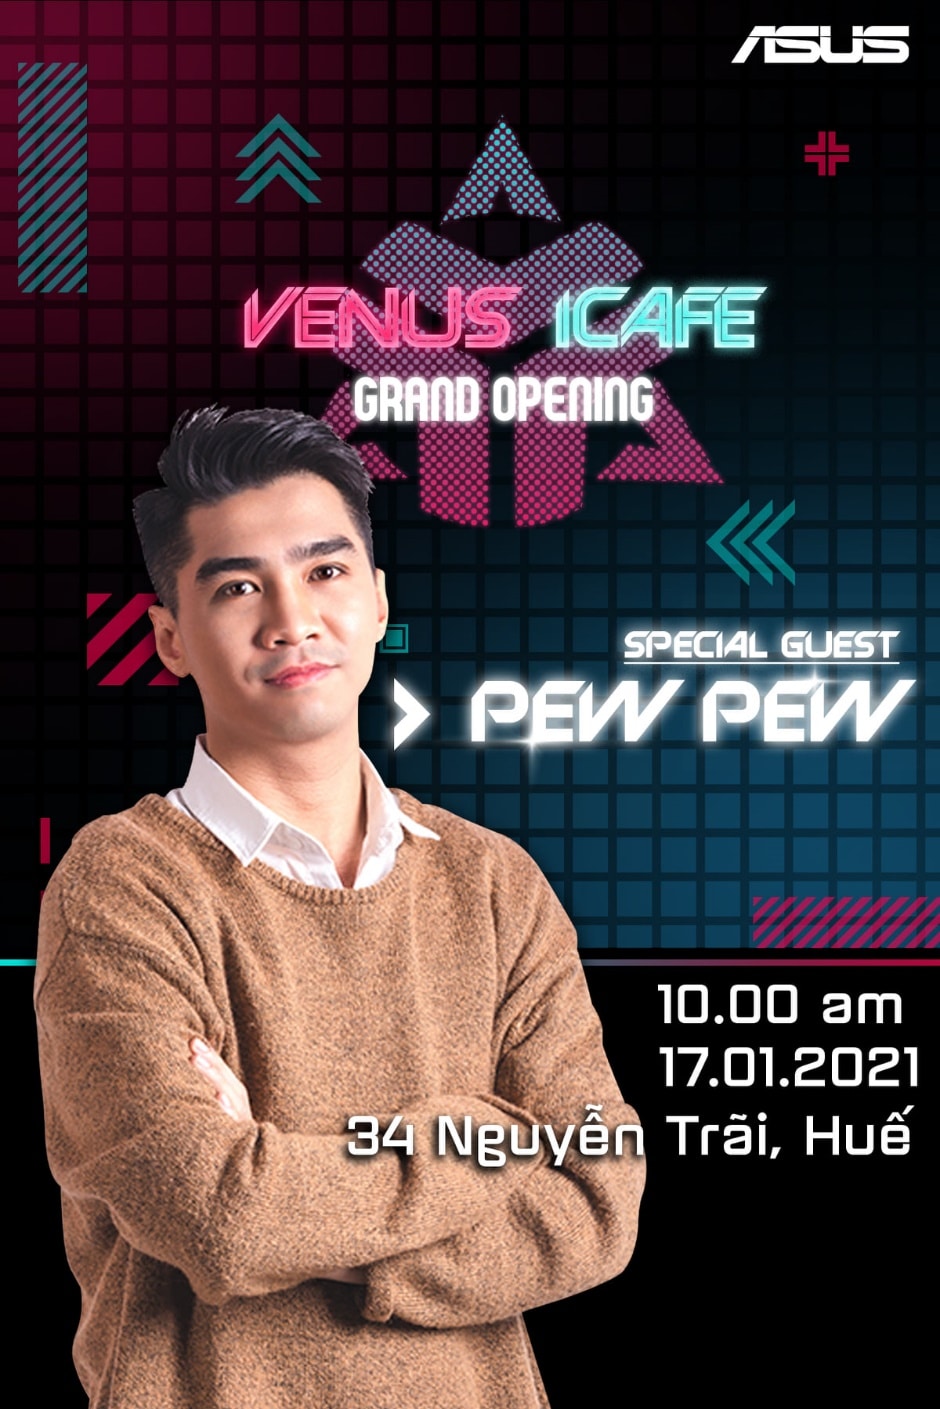 Venus Gaming chuẩn bị khai trương phòng máy Venus I-Cafe tại Huế